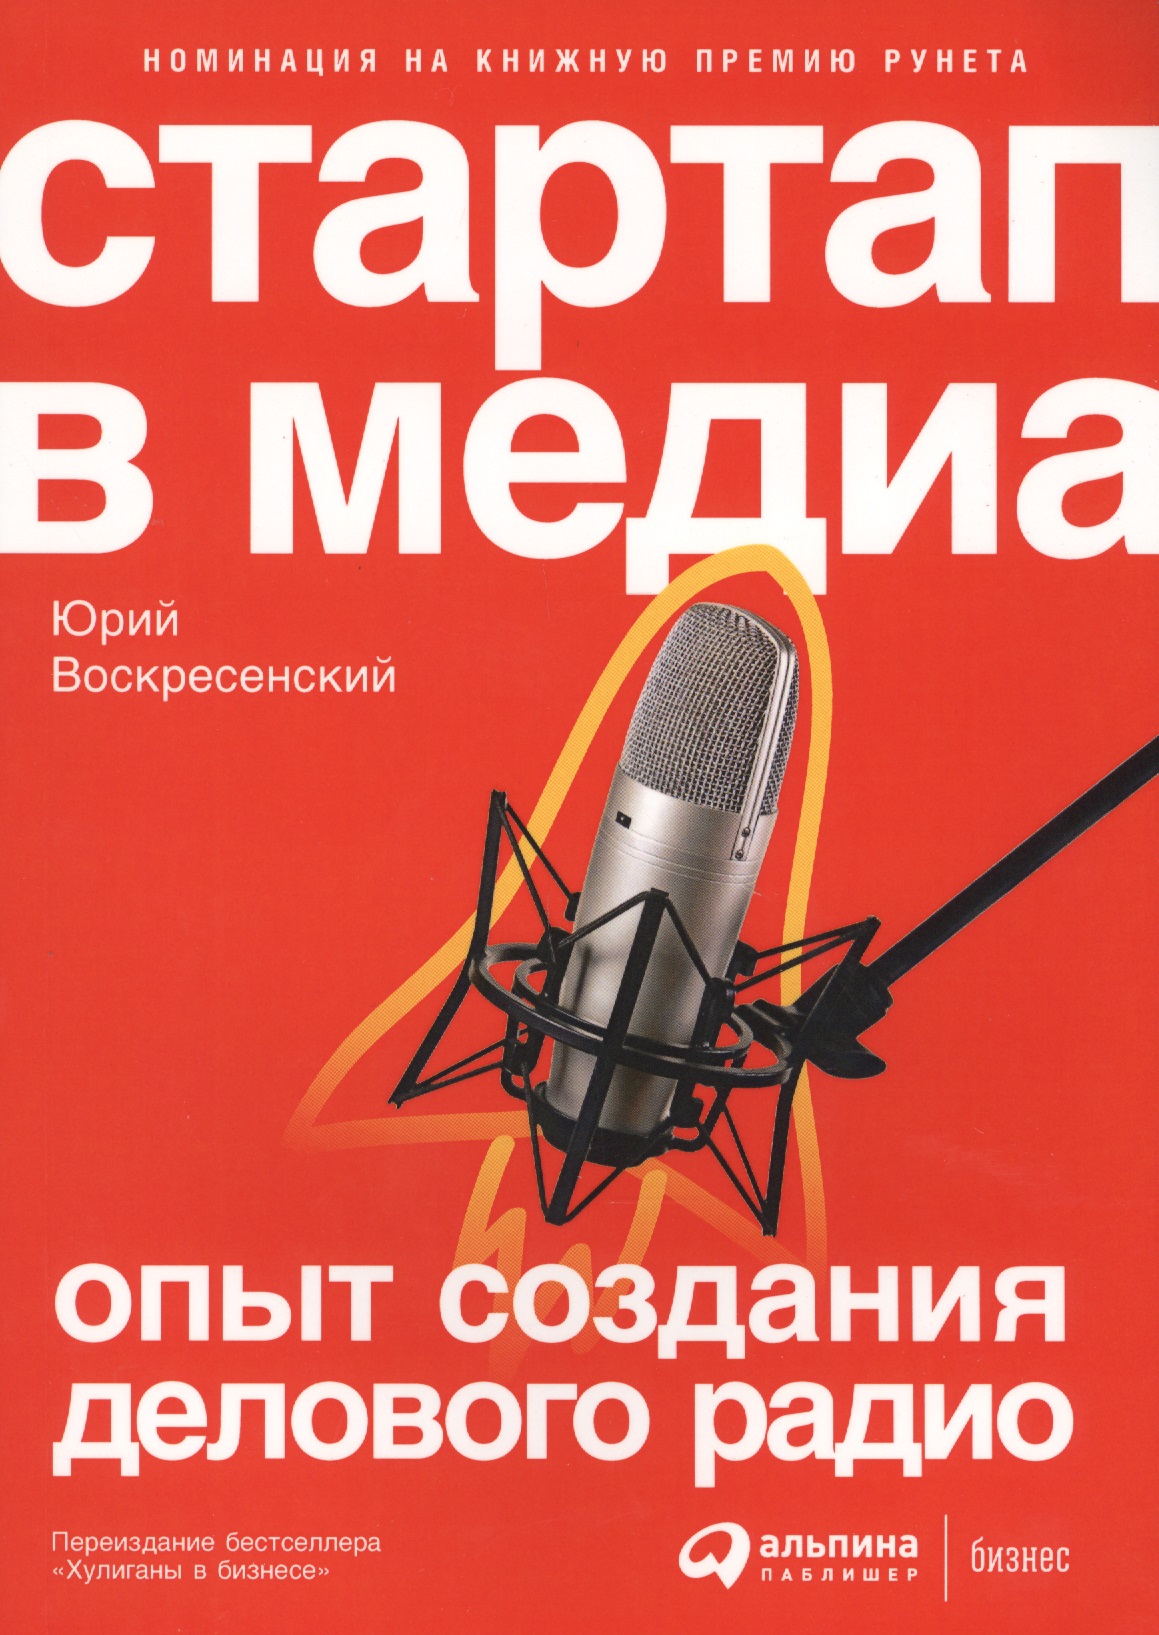 Воскресенский Юрий Владимирович - Стартап в медиа: Опыт создания делового радио